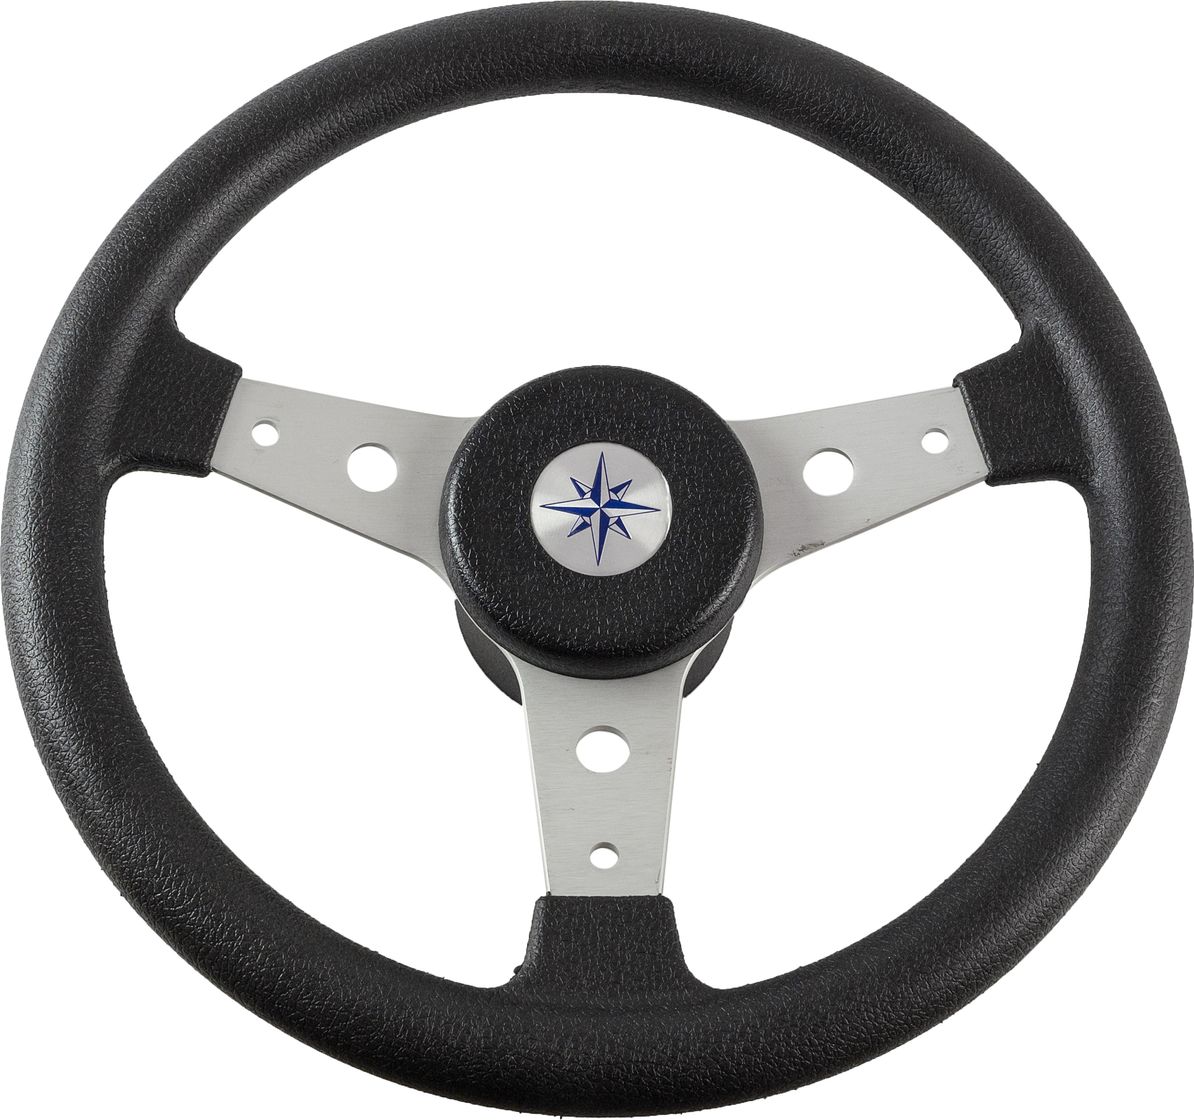 Рулевое колесо DELFINO обод черный, спицы серебряные д. 340 мм VN70401-01 рулевое колесо 7400 7400ss